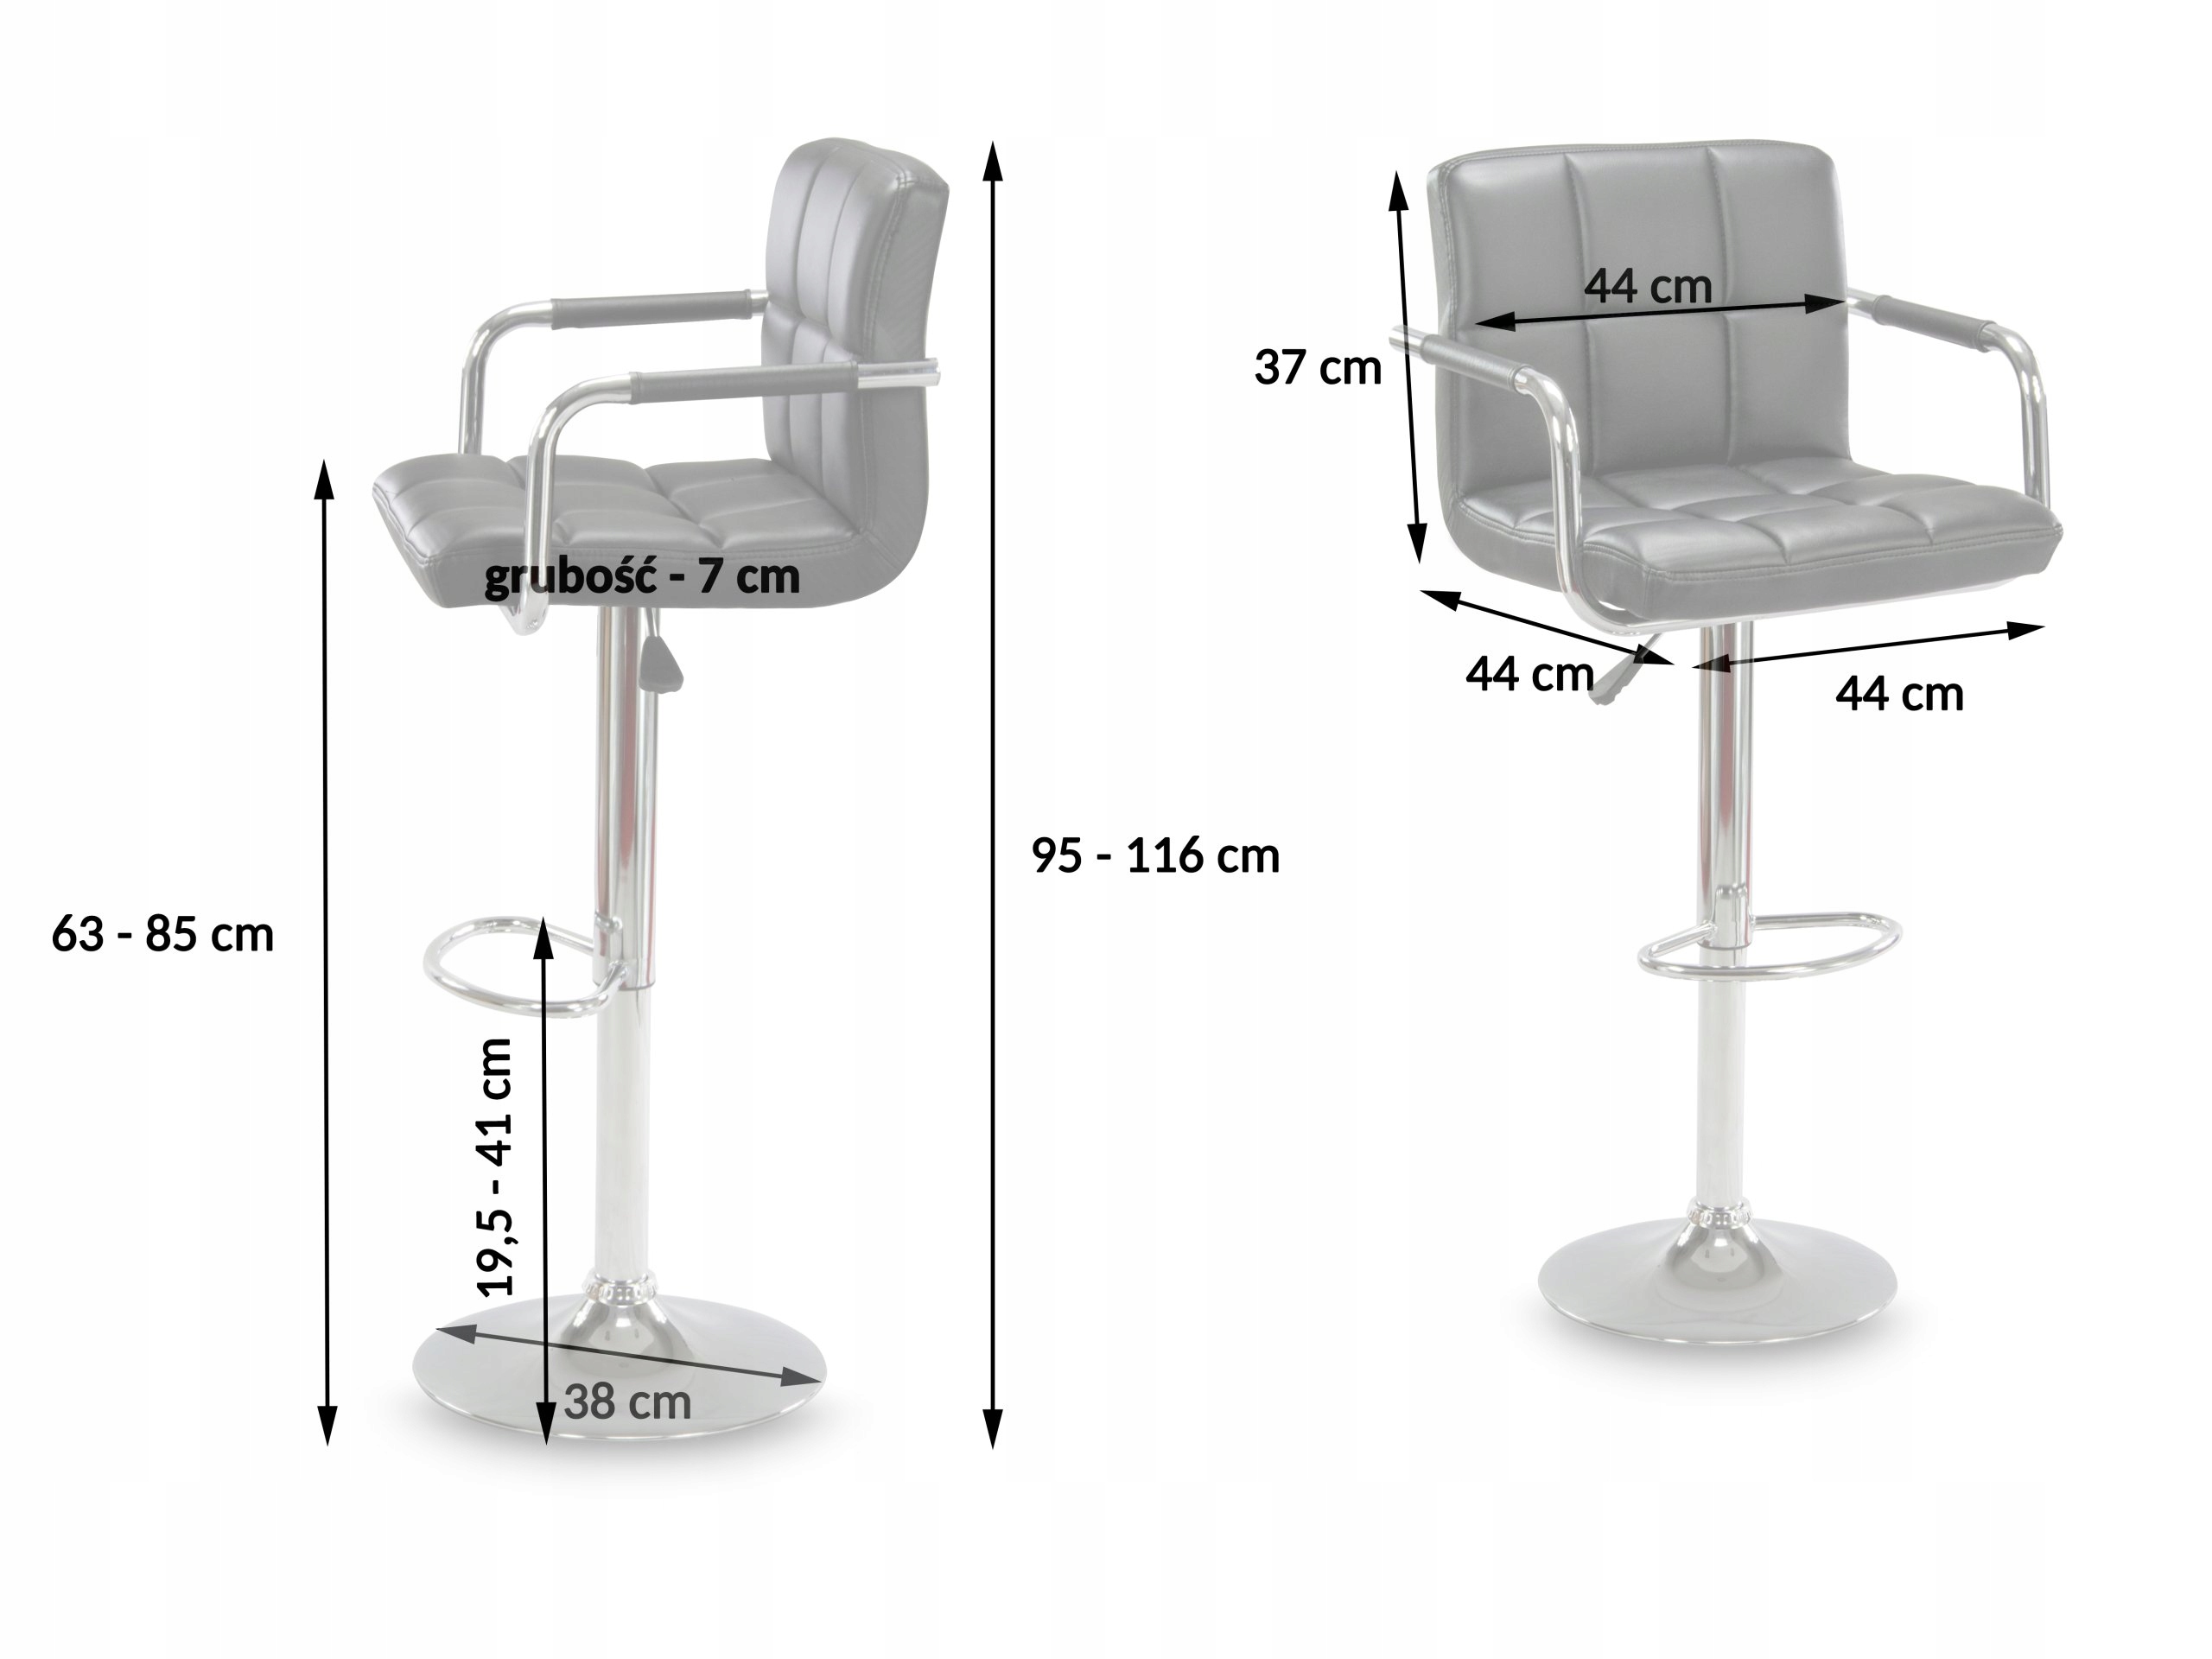 барные стулья высота сиденья 85 см